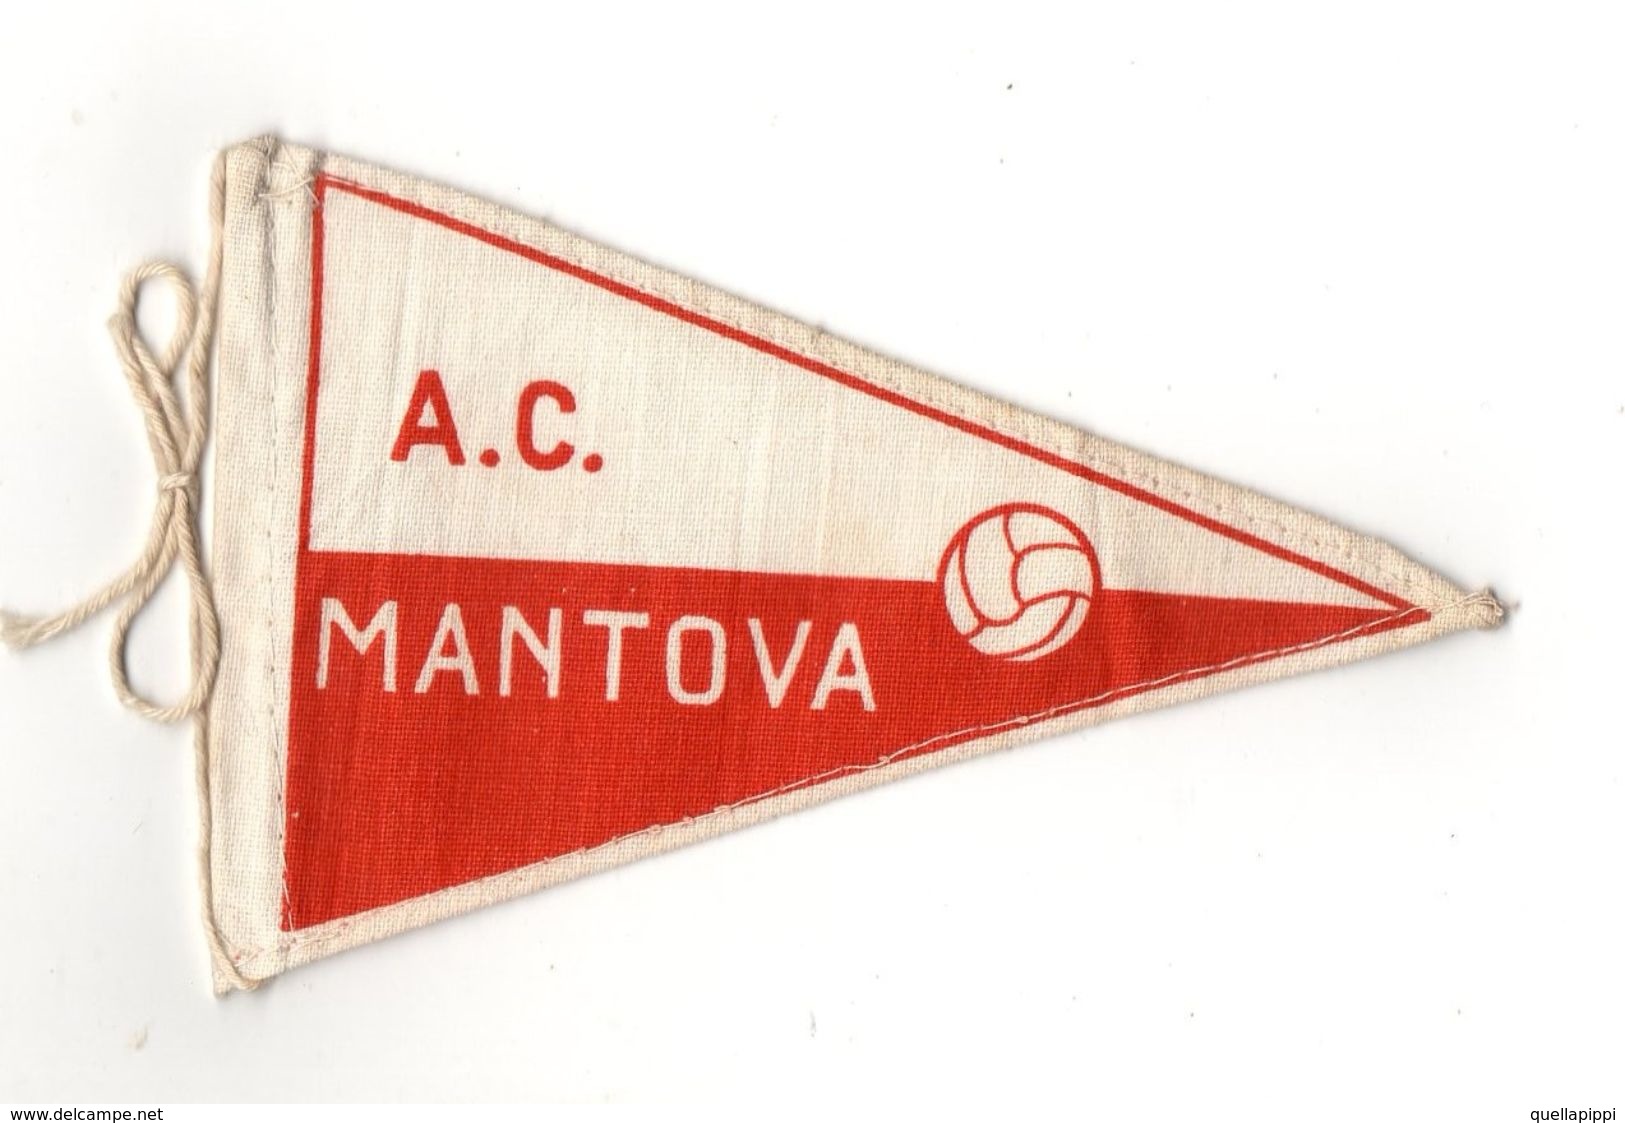 07129 "MANTOVA A.C. FOOTBALL CLUB - BANDIERINA BIFRONTE IN STOFFA CON LEGACCI" ANNI '70 ORIG. - Abbigliamento, Souvenirs & Varie